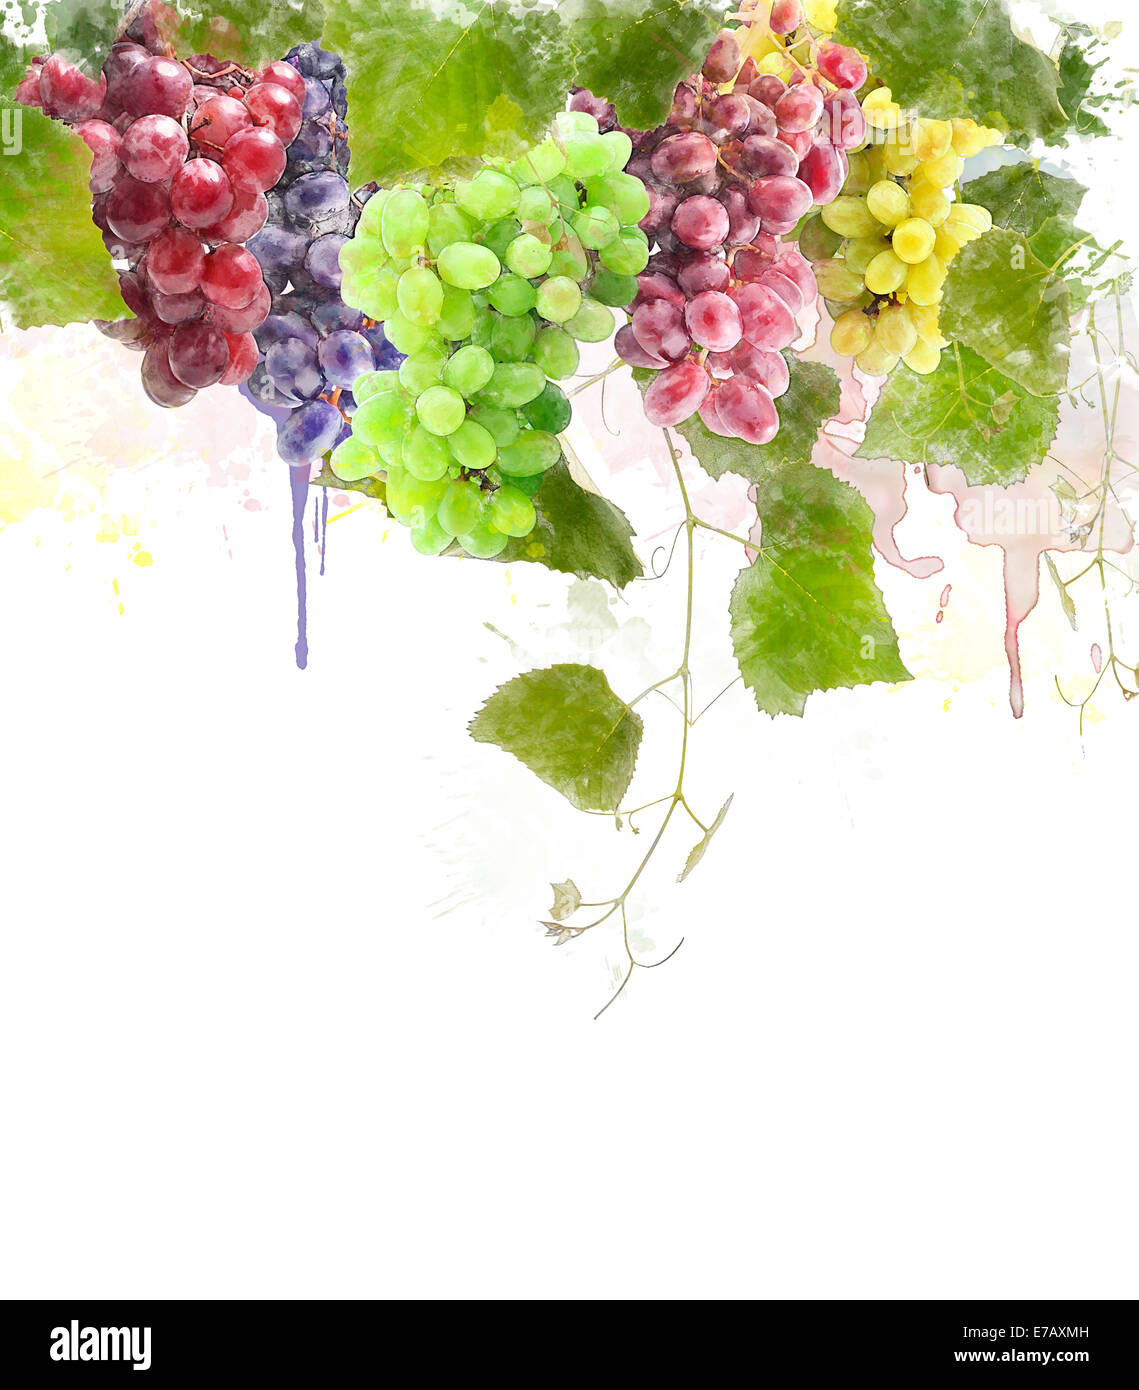 Aquarelle peinture digitale de raisins avec des feuilles Banque D'Images